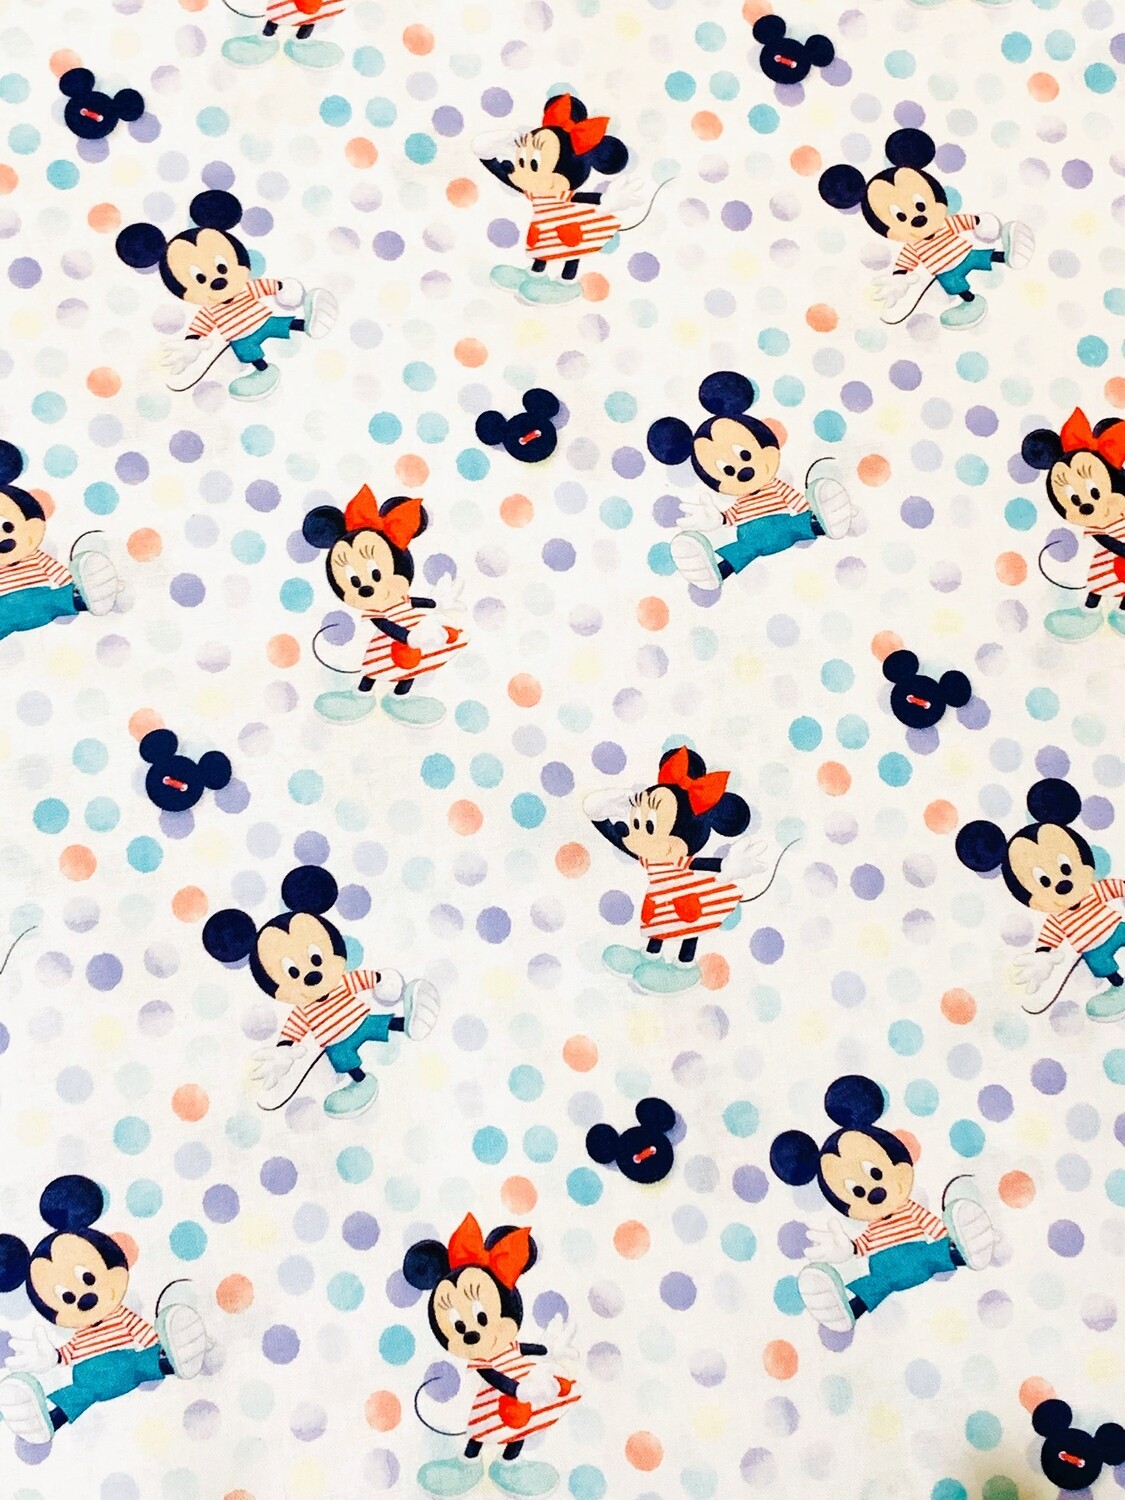 Baby Mickey & Minnie | Licensed Quilting Cotton | 112cm wide - 0.8m Piece